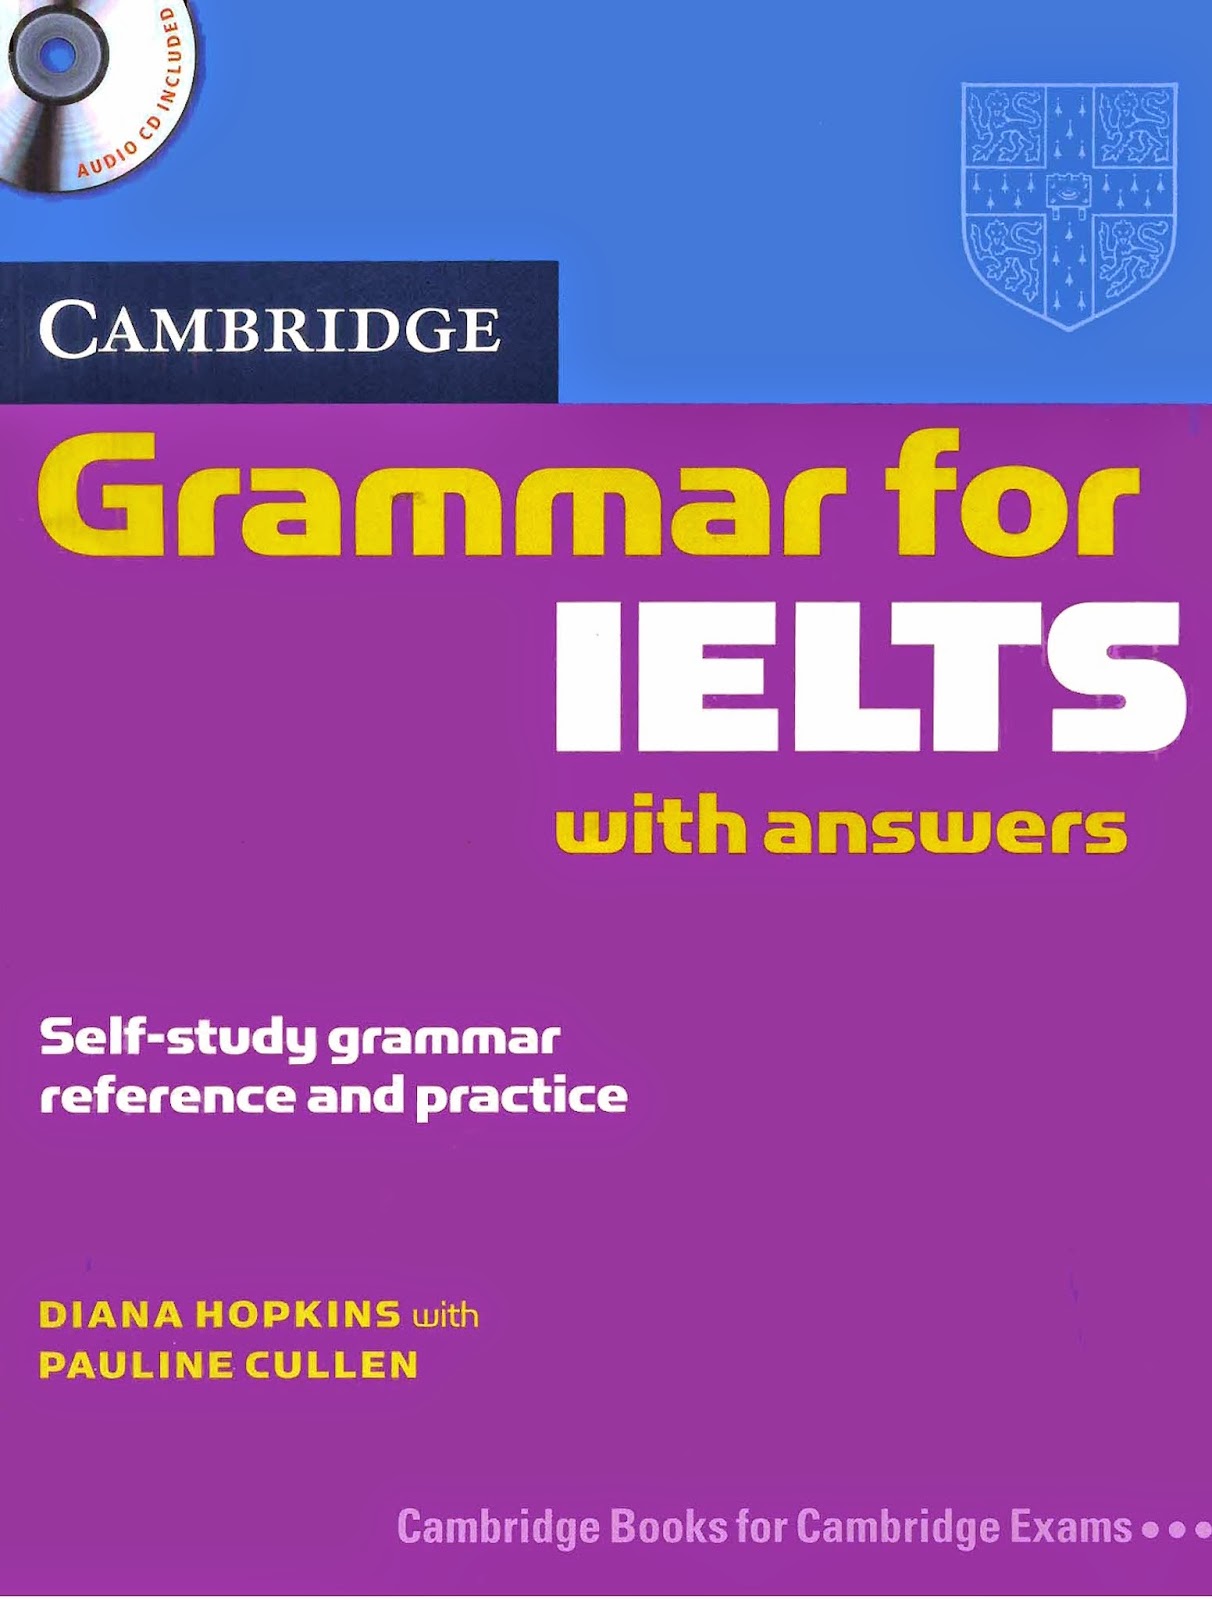 Kết quả hình ảnh cho 3. Grammar for IELTS – with answers